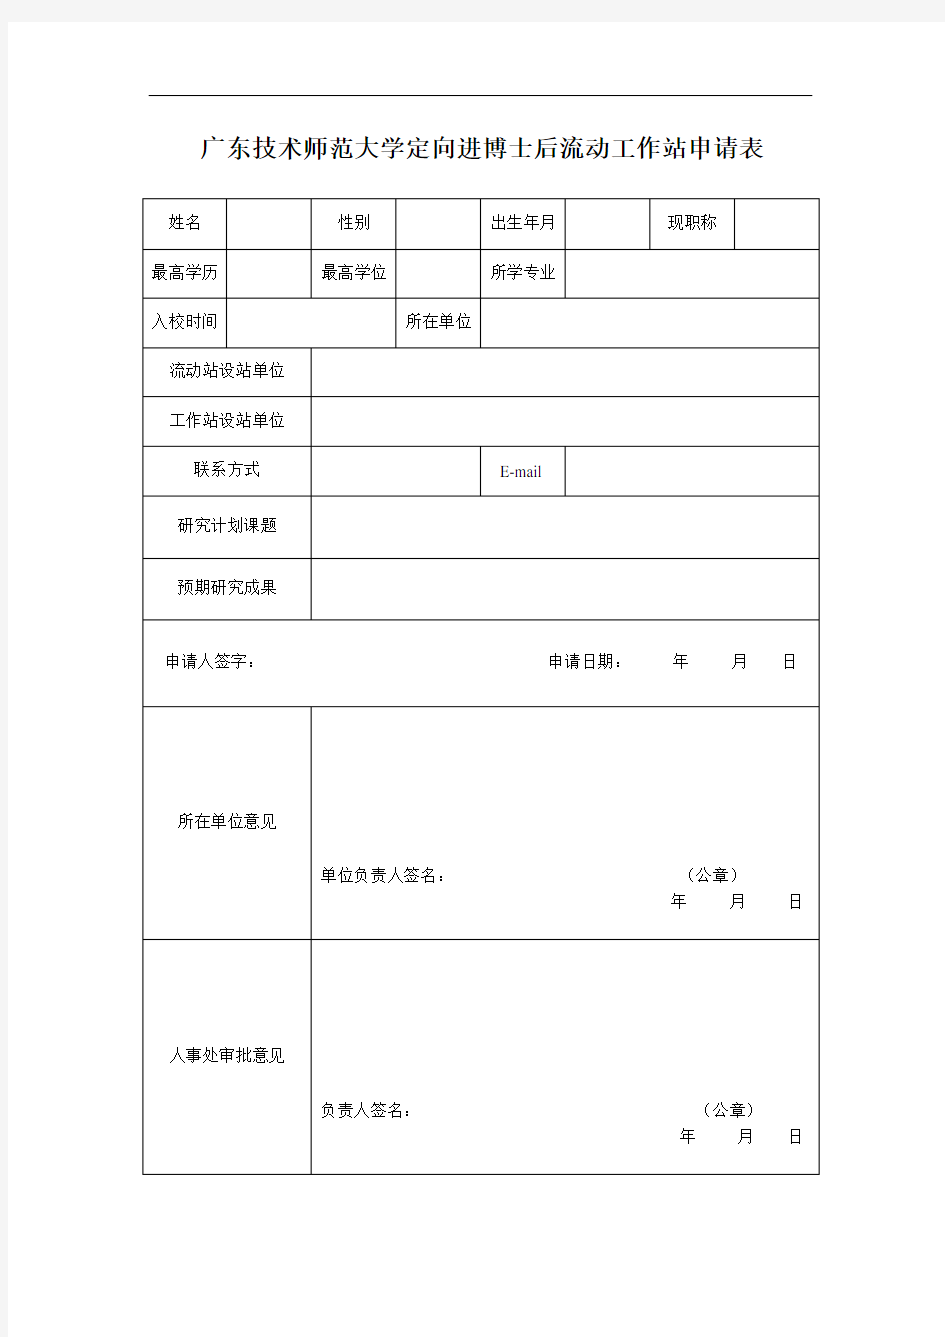 广东技术师范大学定向进博士后流动工作站申请表